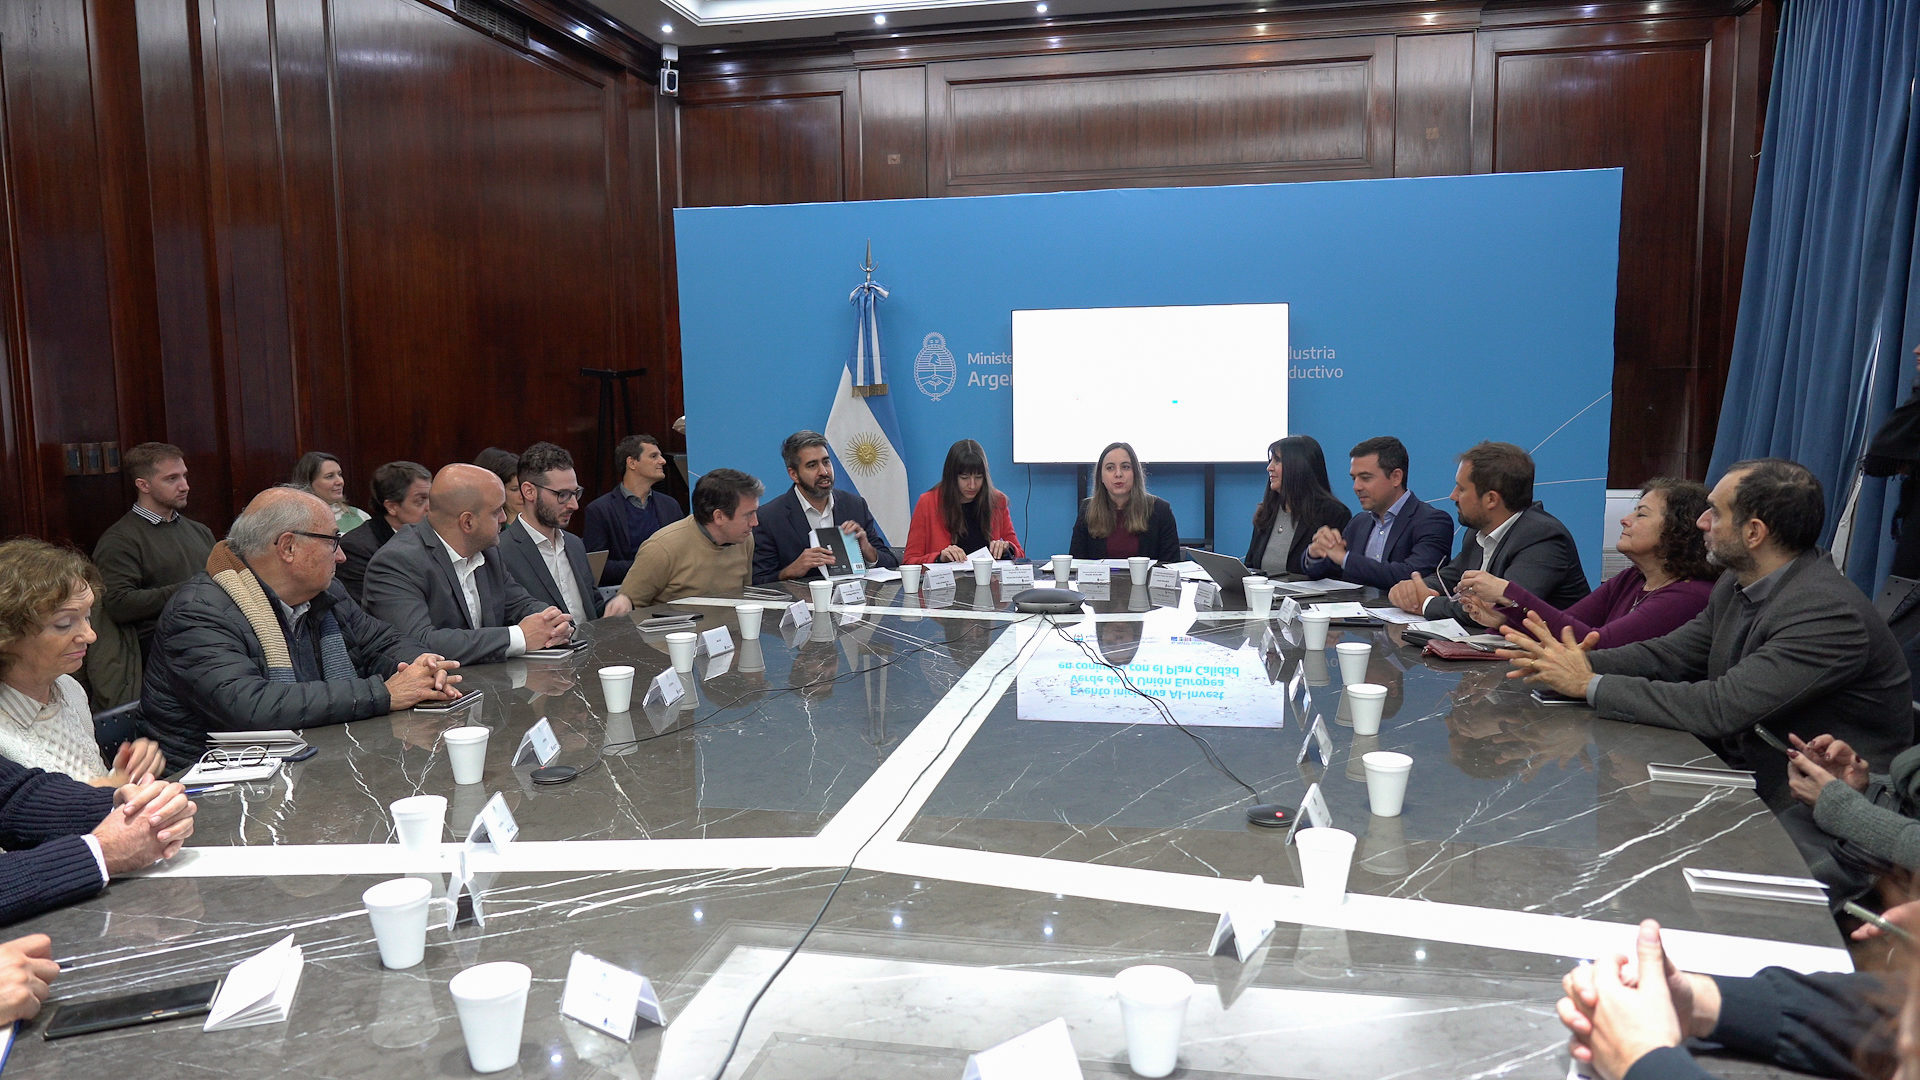 Argentina y la Unión Europea fortalecen el sistema de calidad público y privado en la agenda del desarrollo sostenible